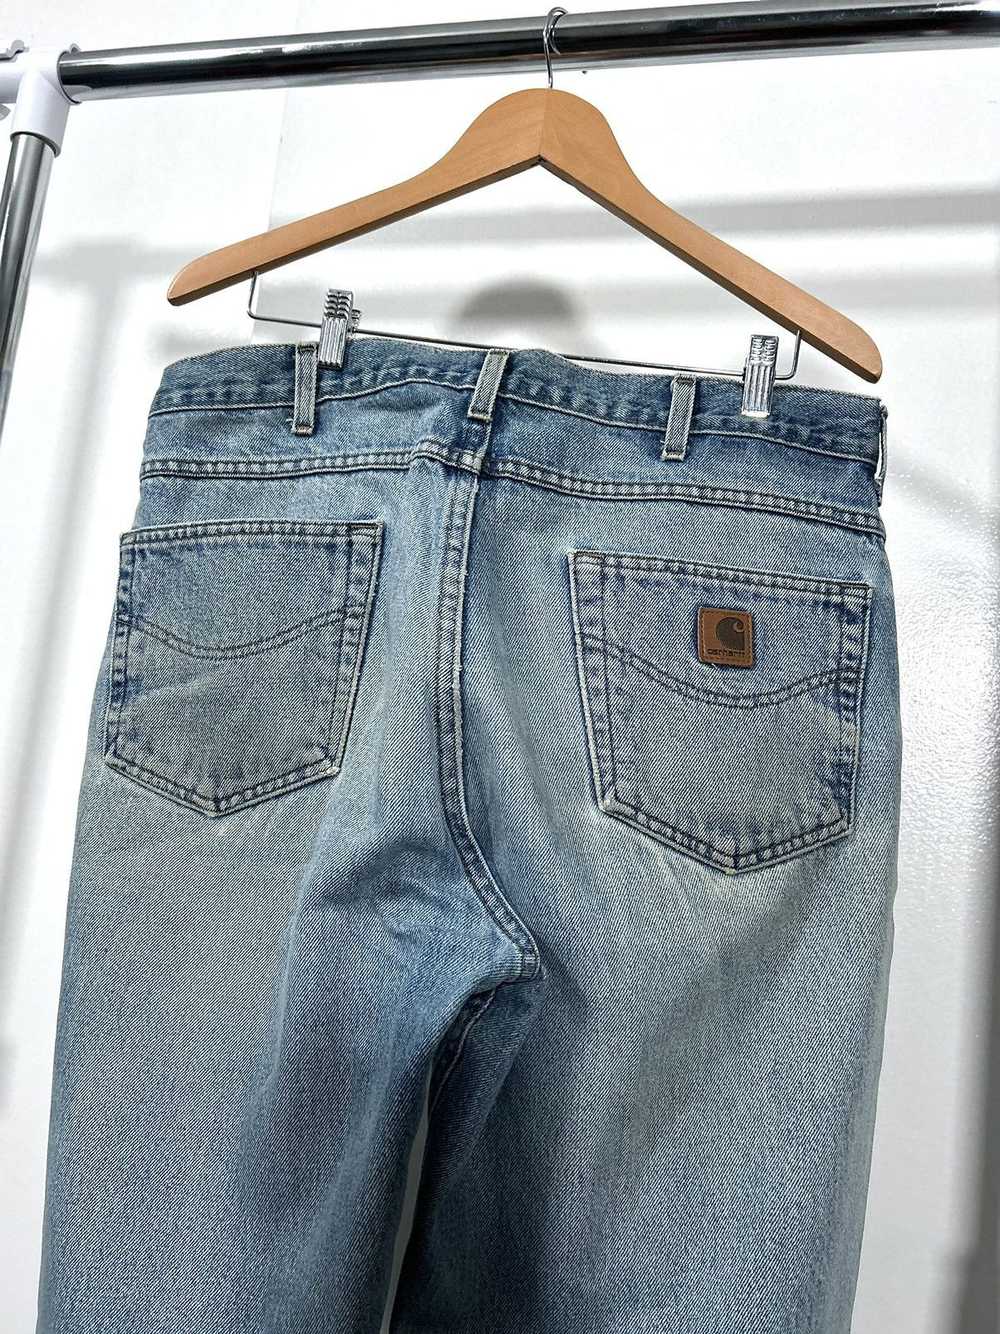 Carhartt × Vintage Vintage Thrashed Carhartt Jeans - image 4